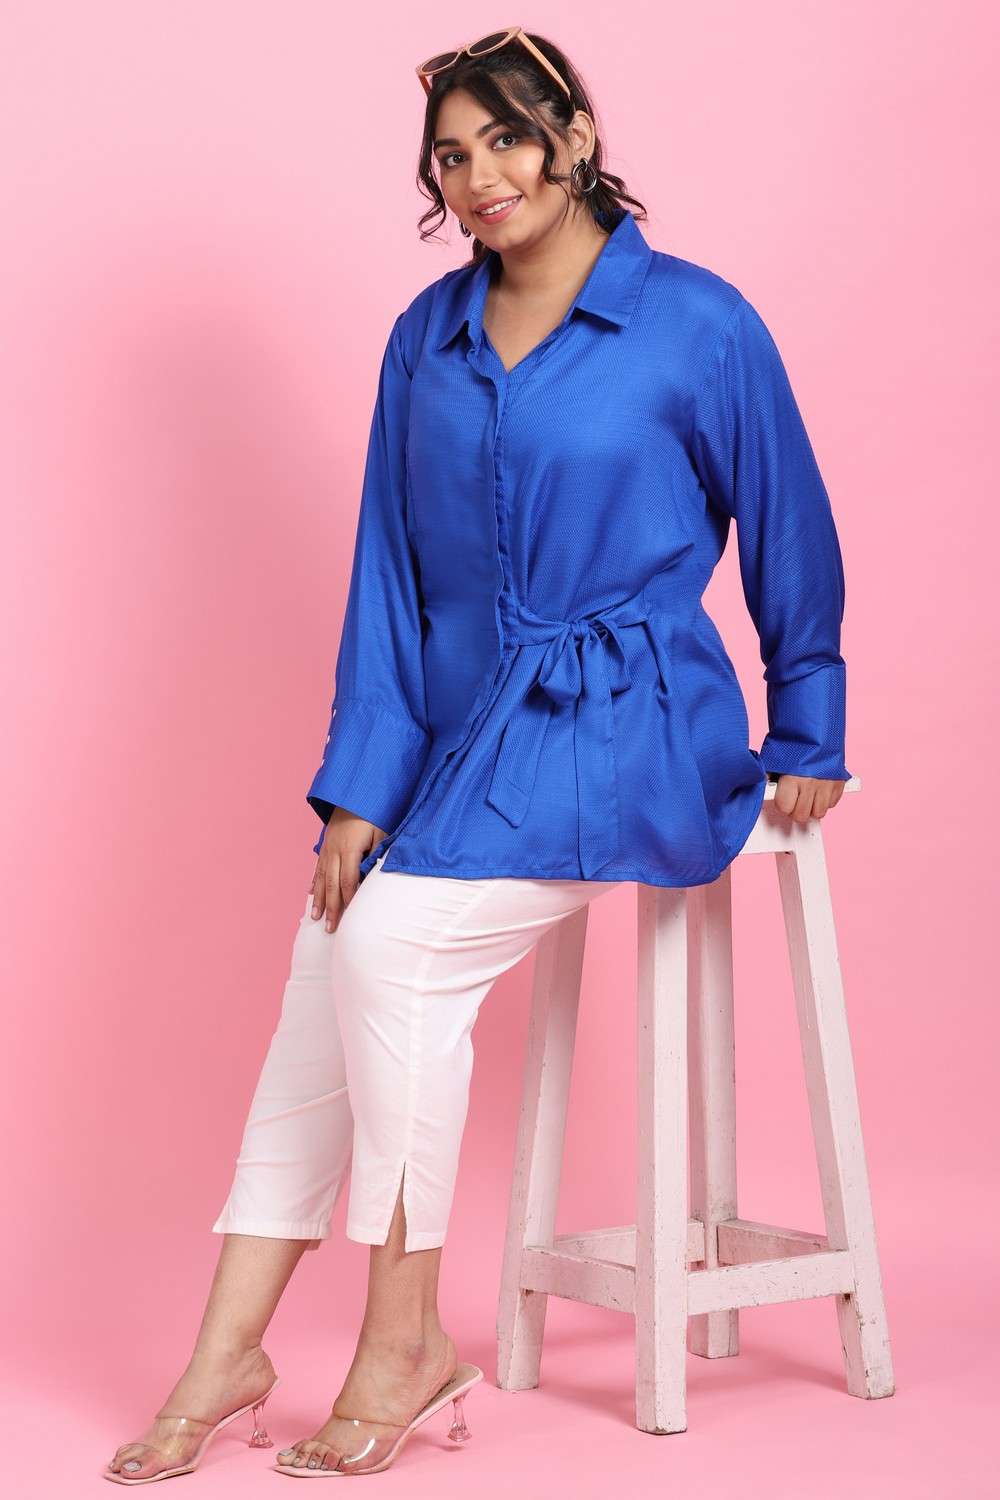 Buy Blue Tops for Women by Lastinch Online